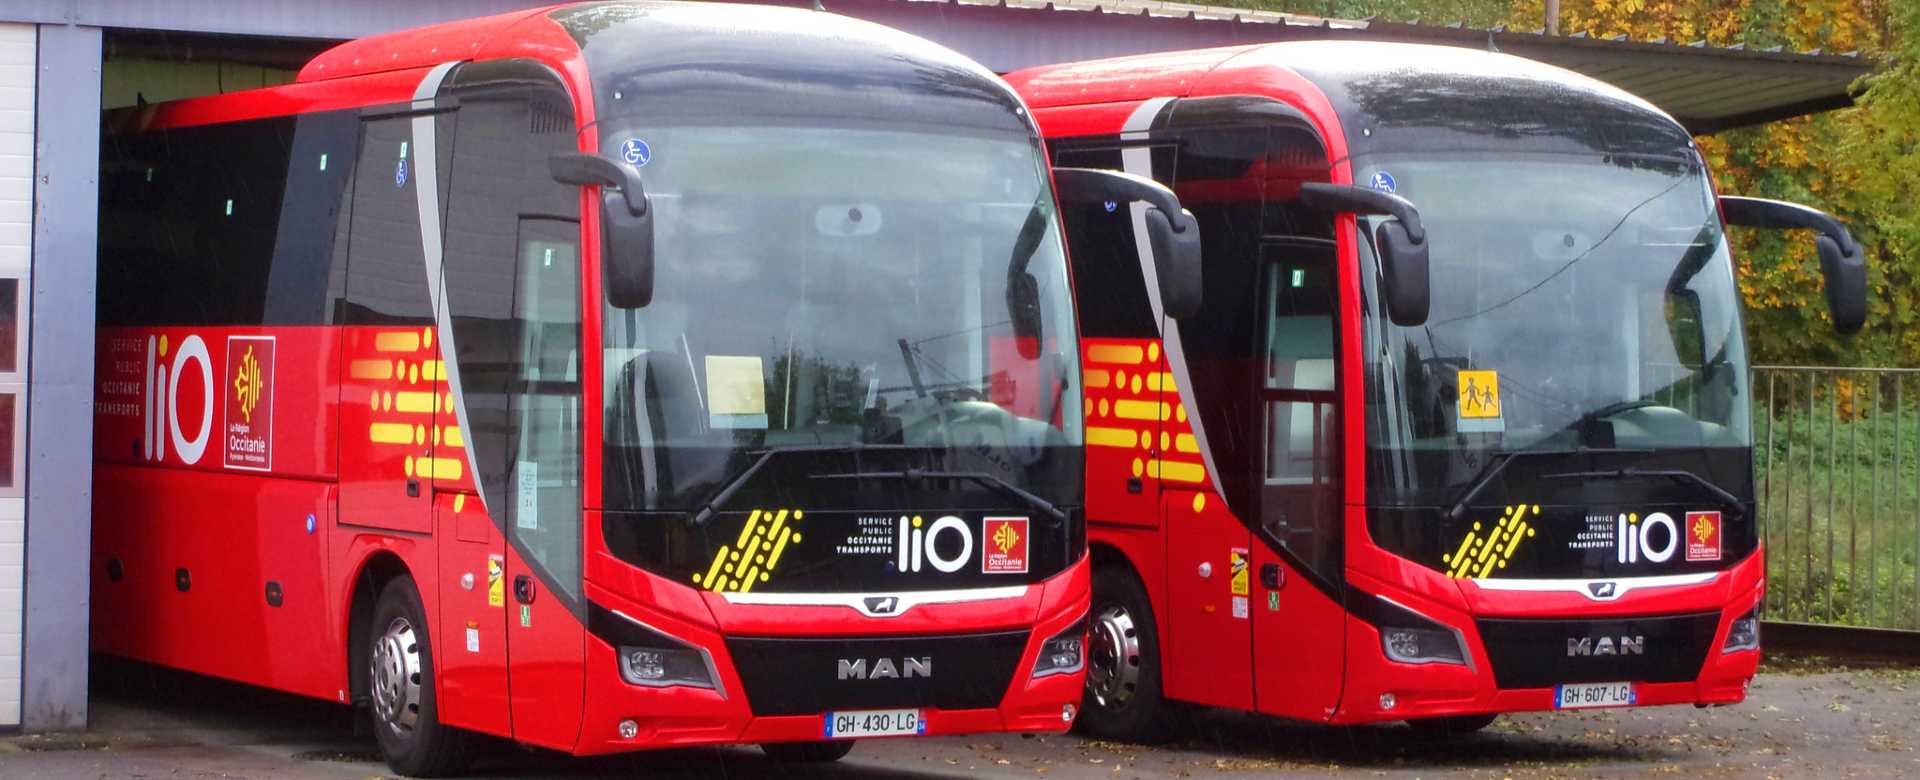 Cars et bus en Lozère pour votre mobilité et vos voyages